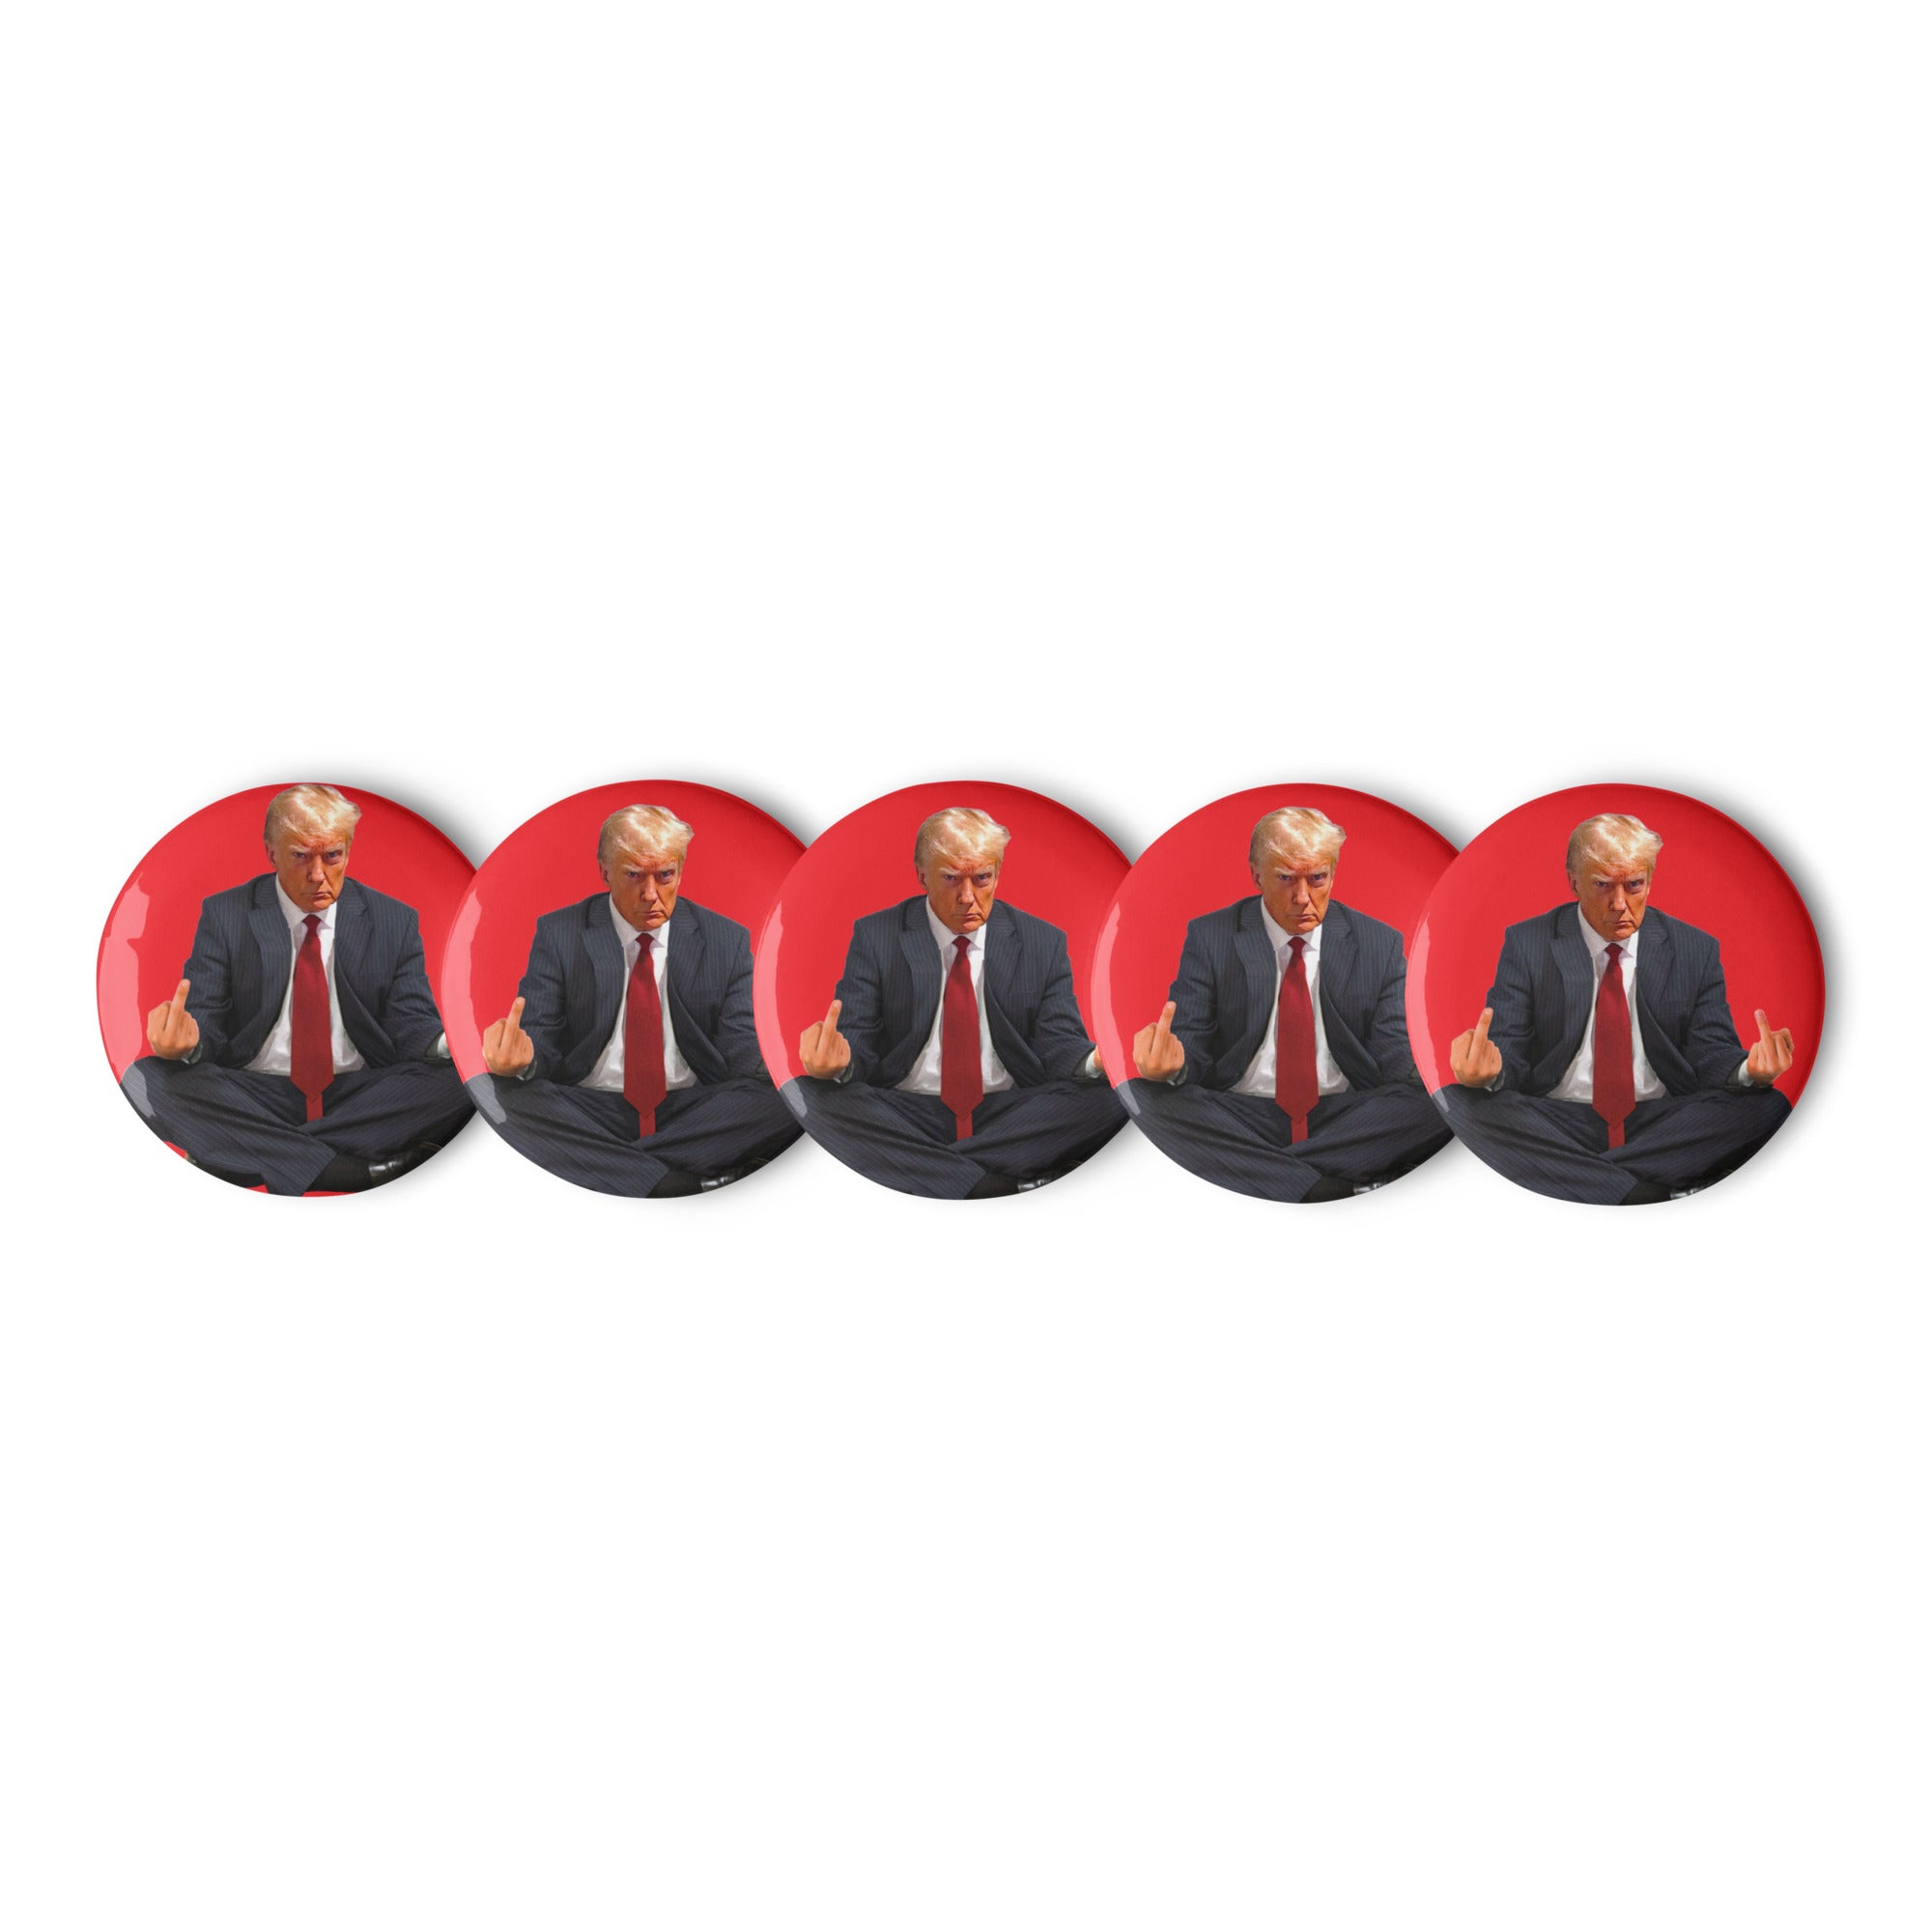 Zen of Trump Mugshot Set of Buttons